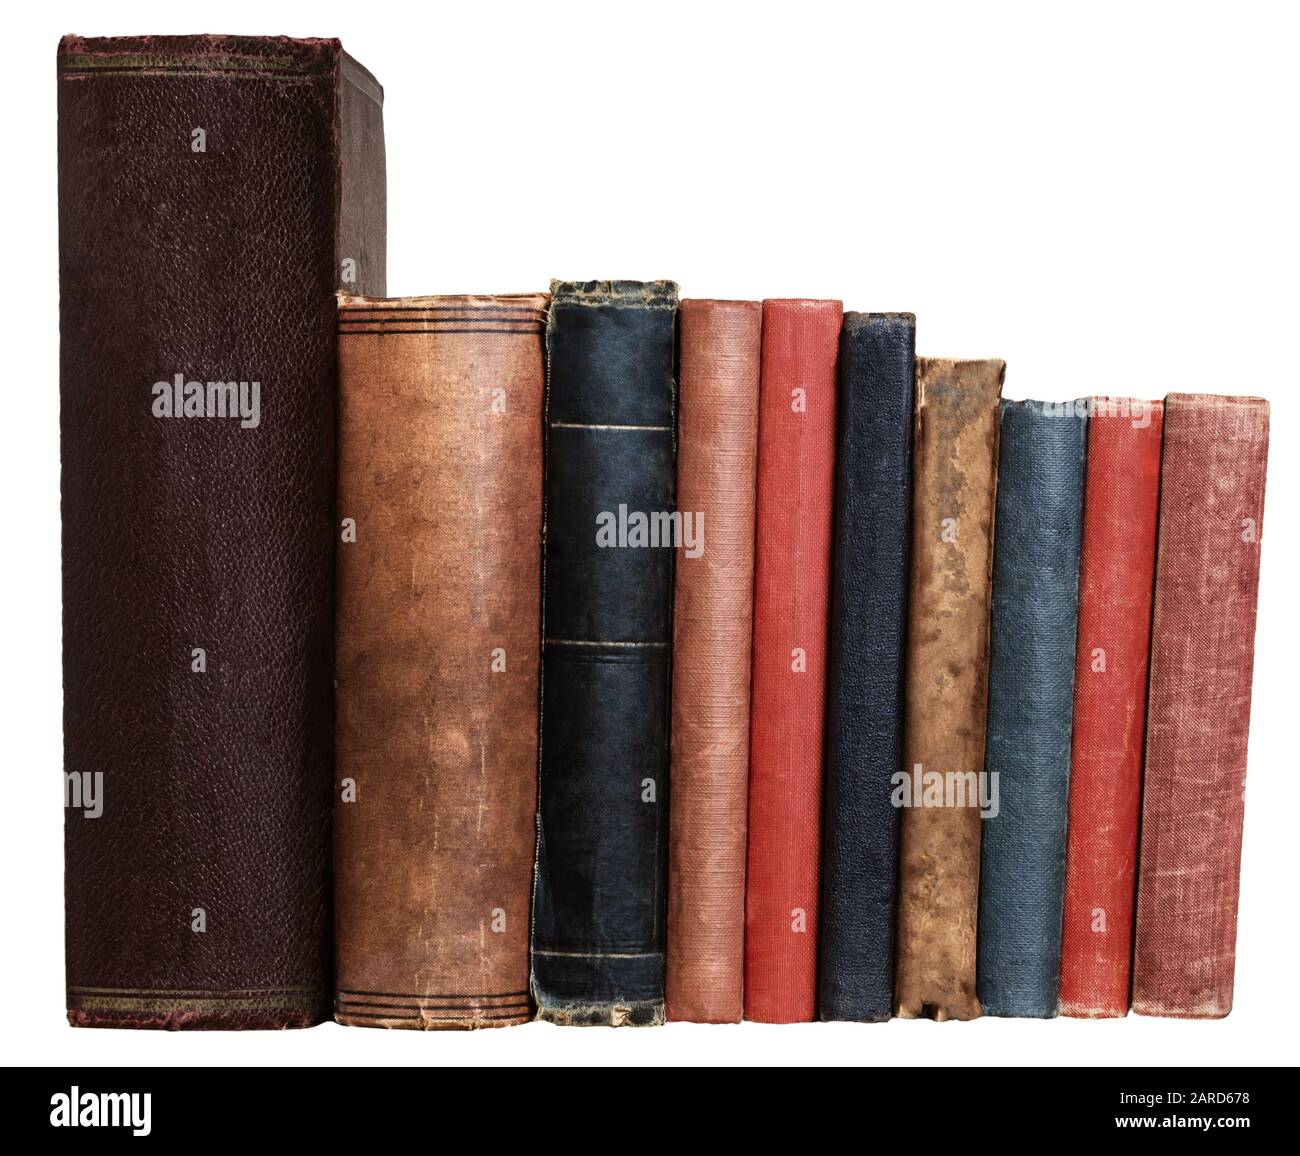 Une rangée de vieux livres de différentes couleurs et tailles, isolés sur un fond blanc. Yeux tournés vers la visionneuse. Banque D'Images